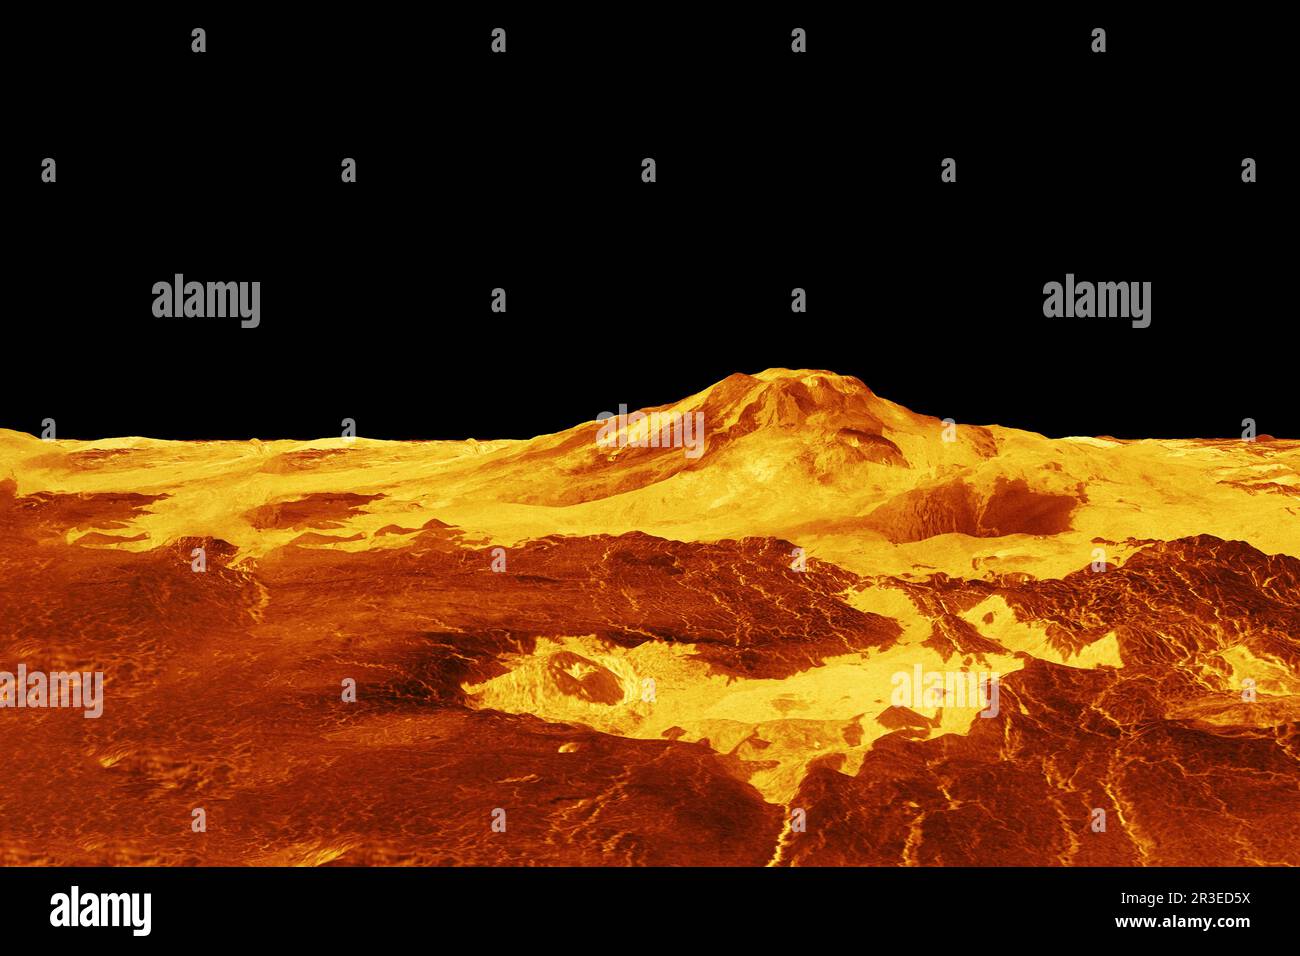 La surface de la planète Vénus. Éléments de cette image fournissant NASA. Banque D'Images